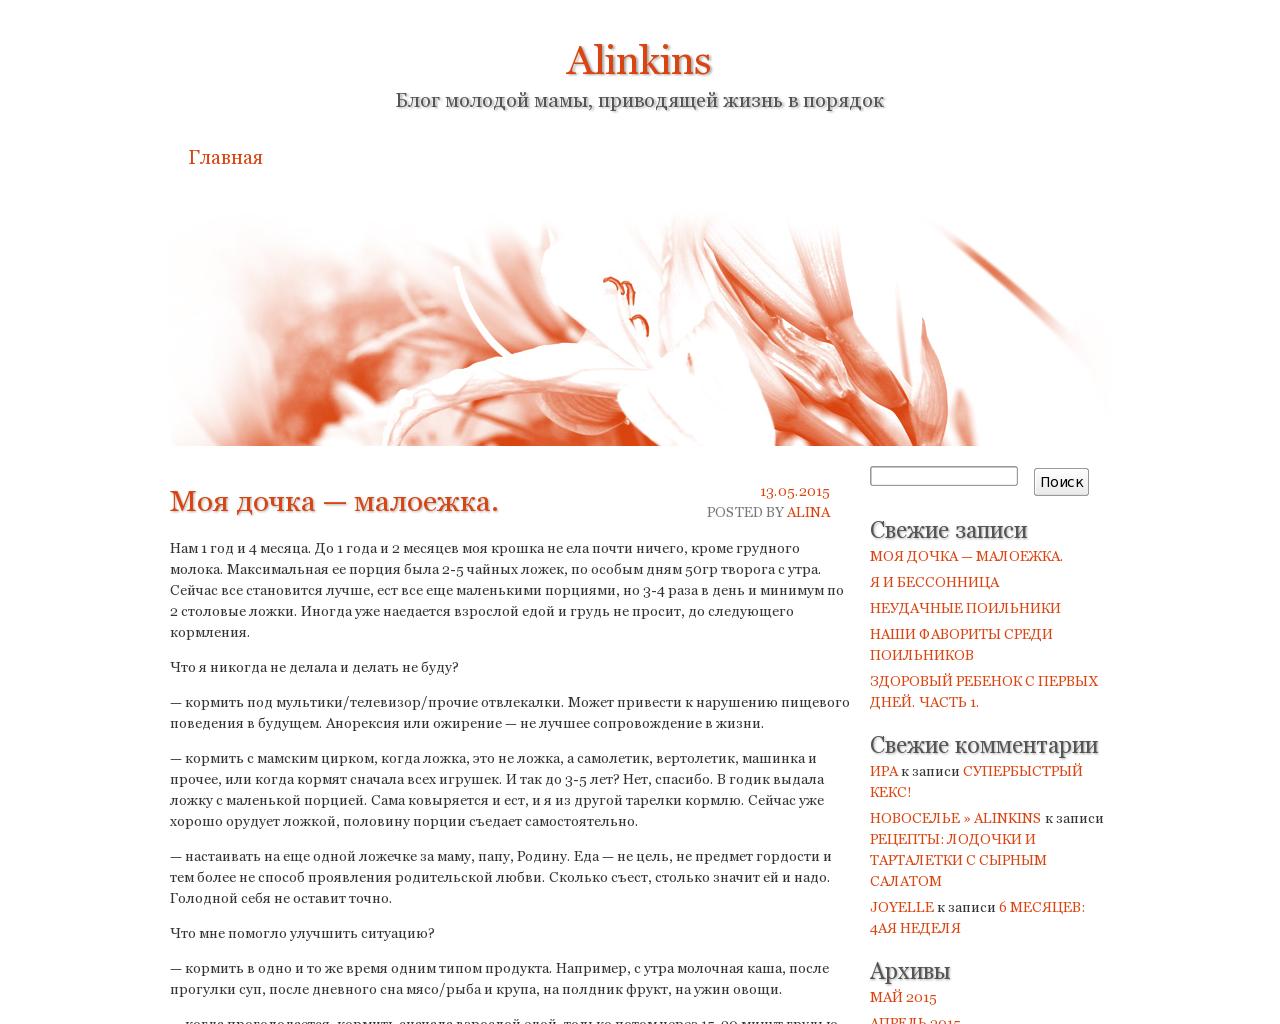 Изображение сайта alinkins.ru в разрешении 1280x1024